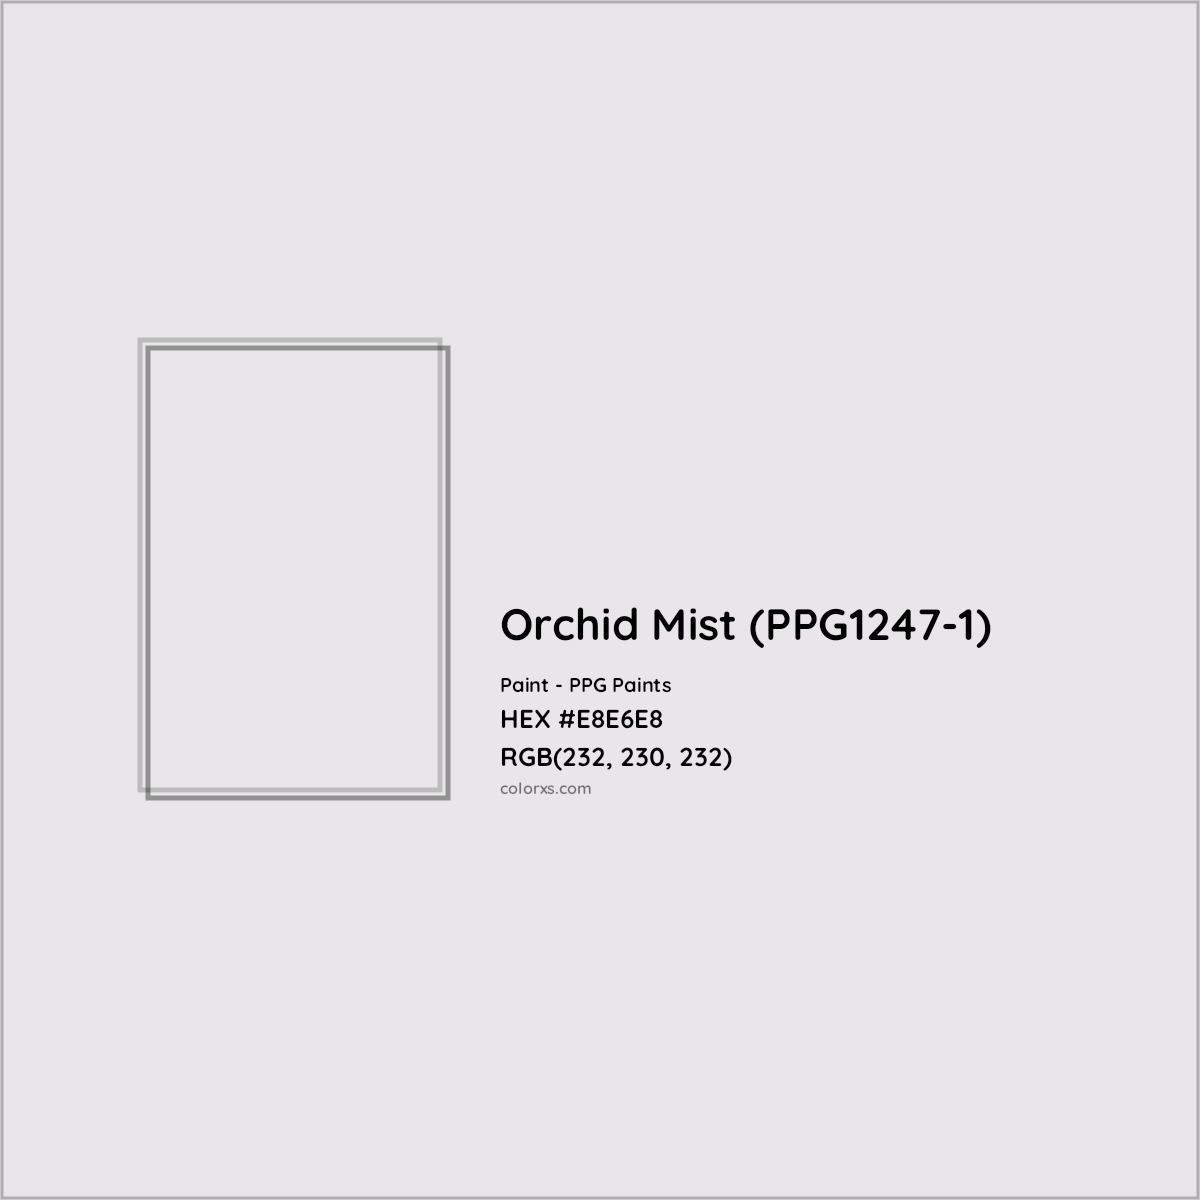 HEX #E8E6E8 Orchid Mist (PPG1247-1) Paint PPG Paints - Color Code